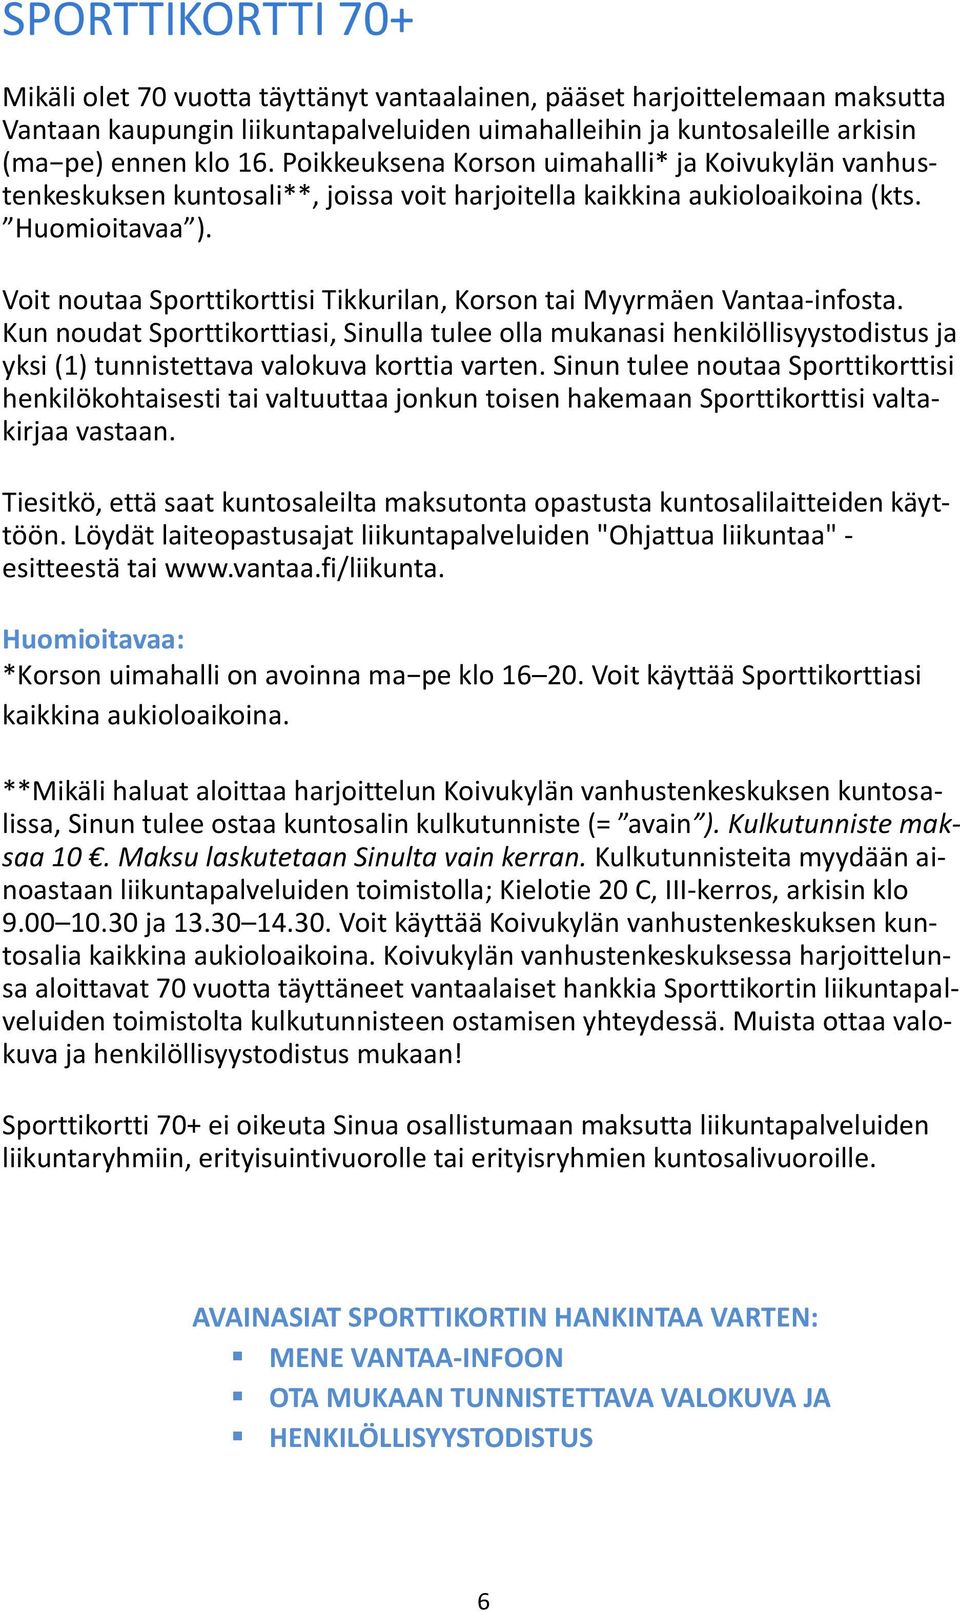 Voit noutaa Sporttikorttisi Tikkurilan, Korson tai Myyrmäen Vantaa-infosta.